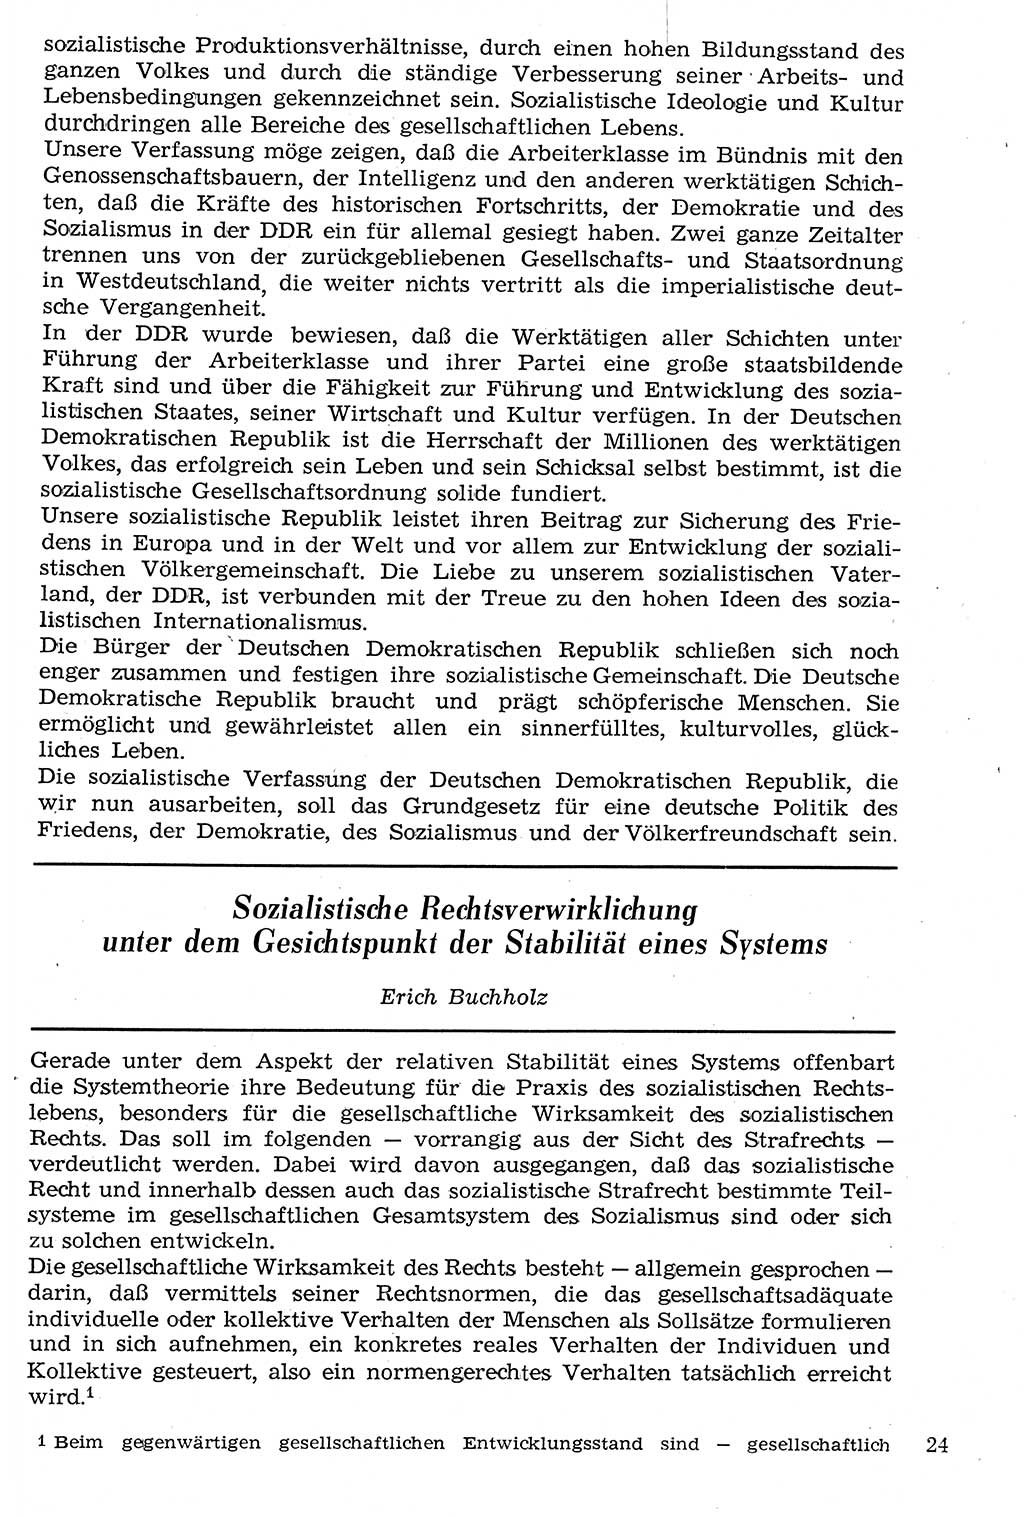 Staat und Recht (StuR), 17. Jahrgang [Deutsche Demokratische Republik (DDR)] 1968, Seite 24 (StuR DDR 1968, S. 24)